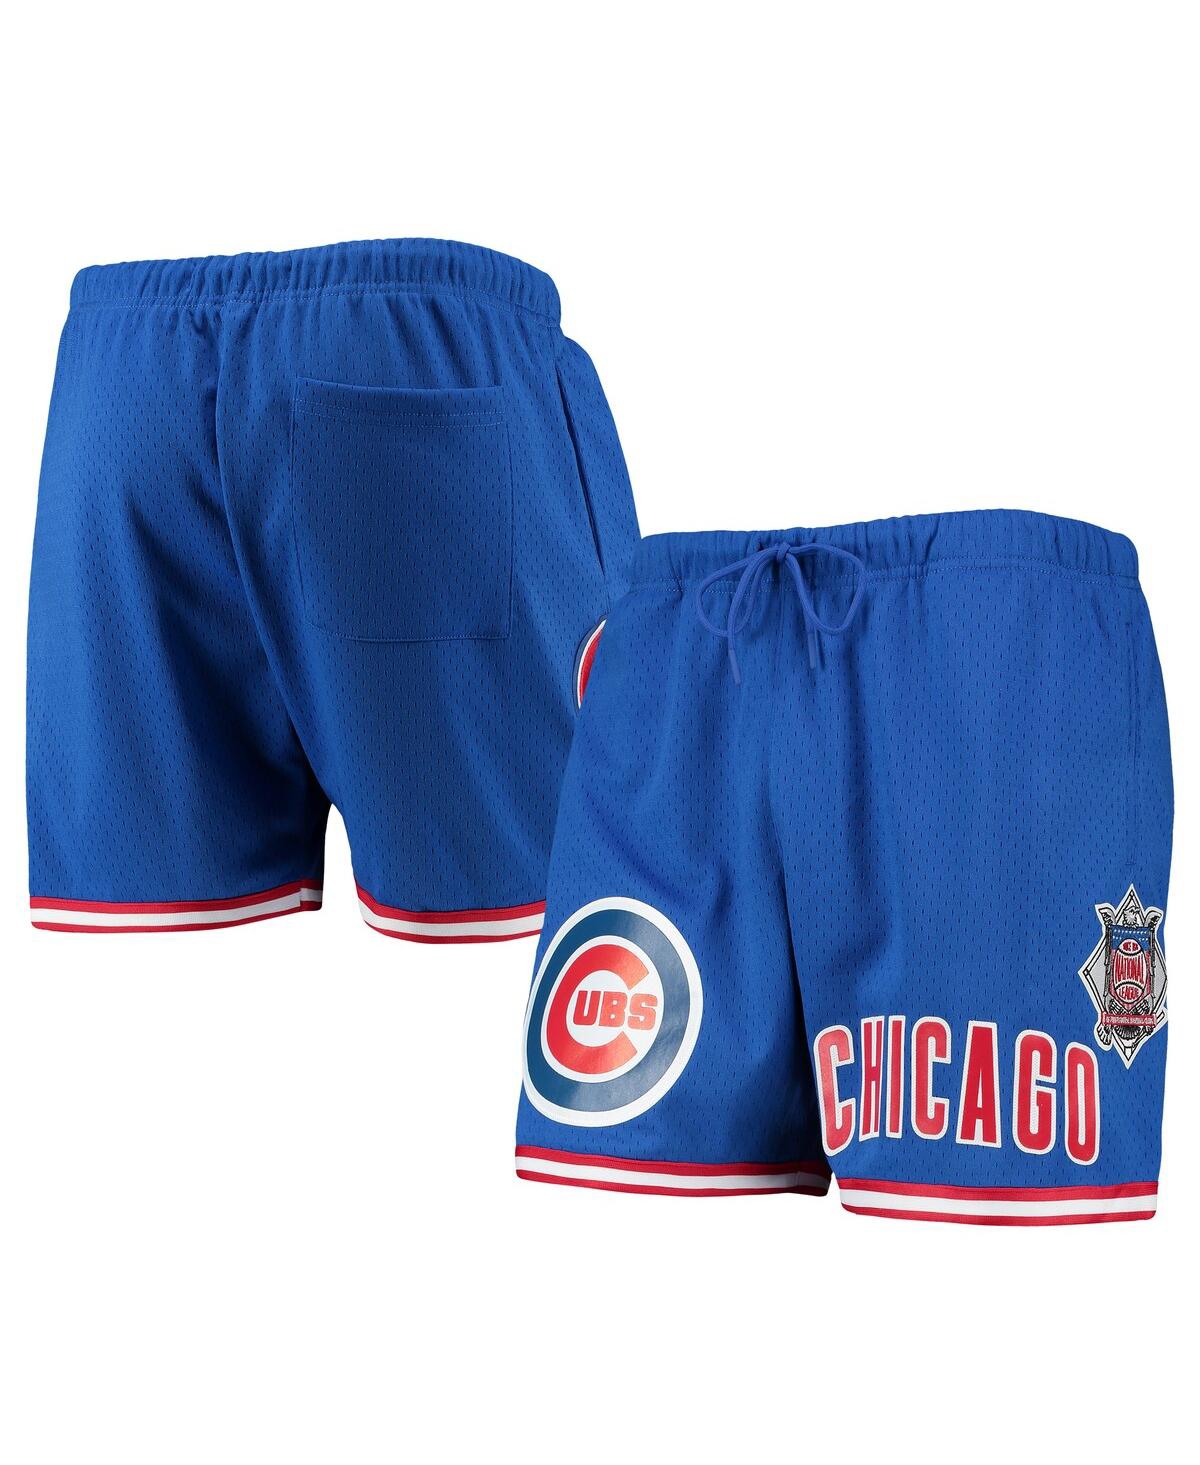 Shop Pro Standard Men's  Royal Chicago Cubs Since 1876 Mesh Shorts